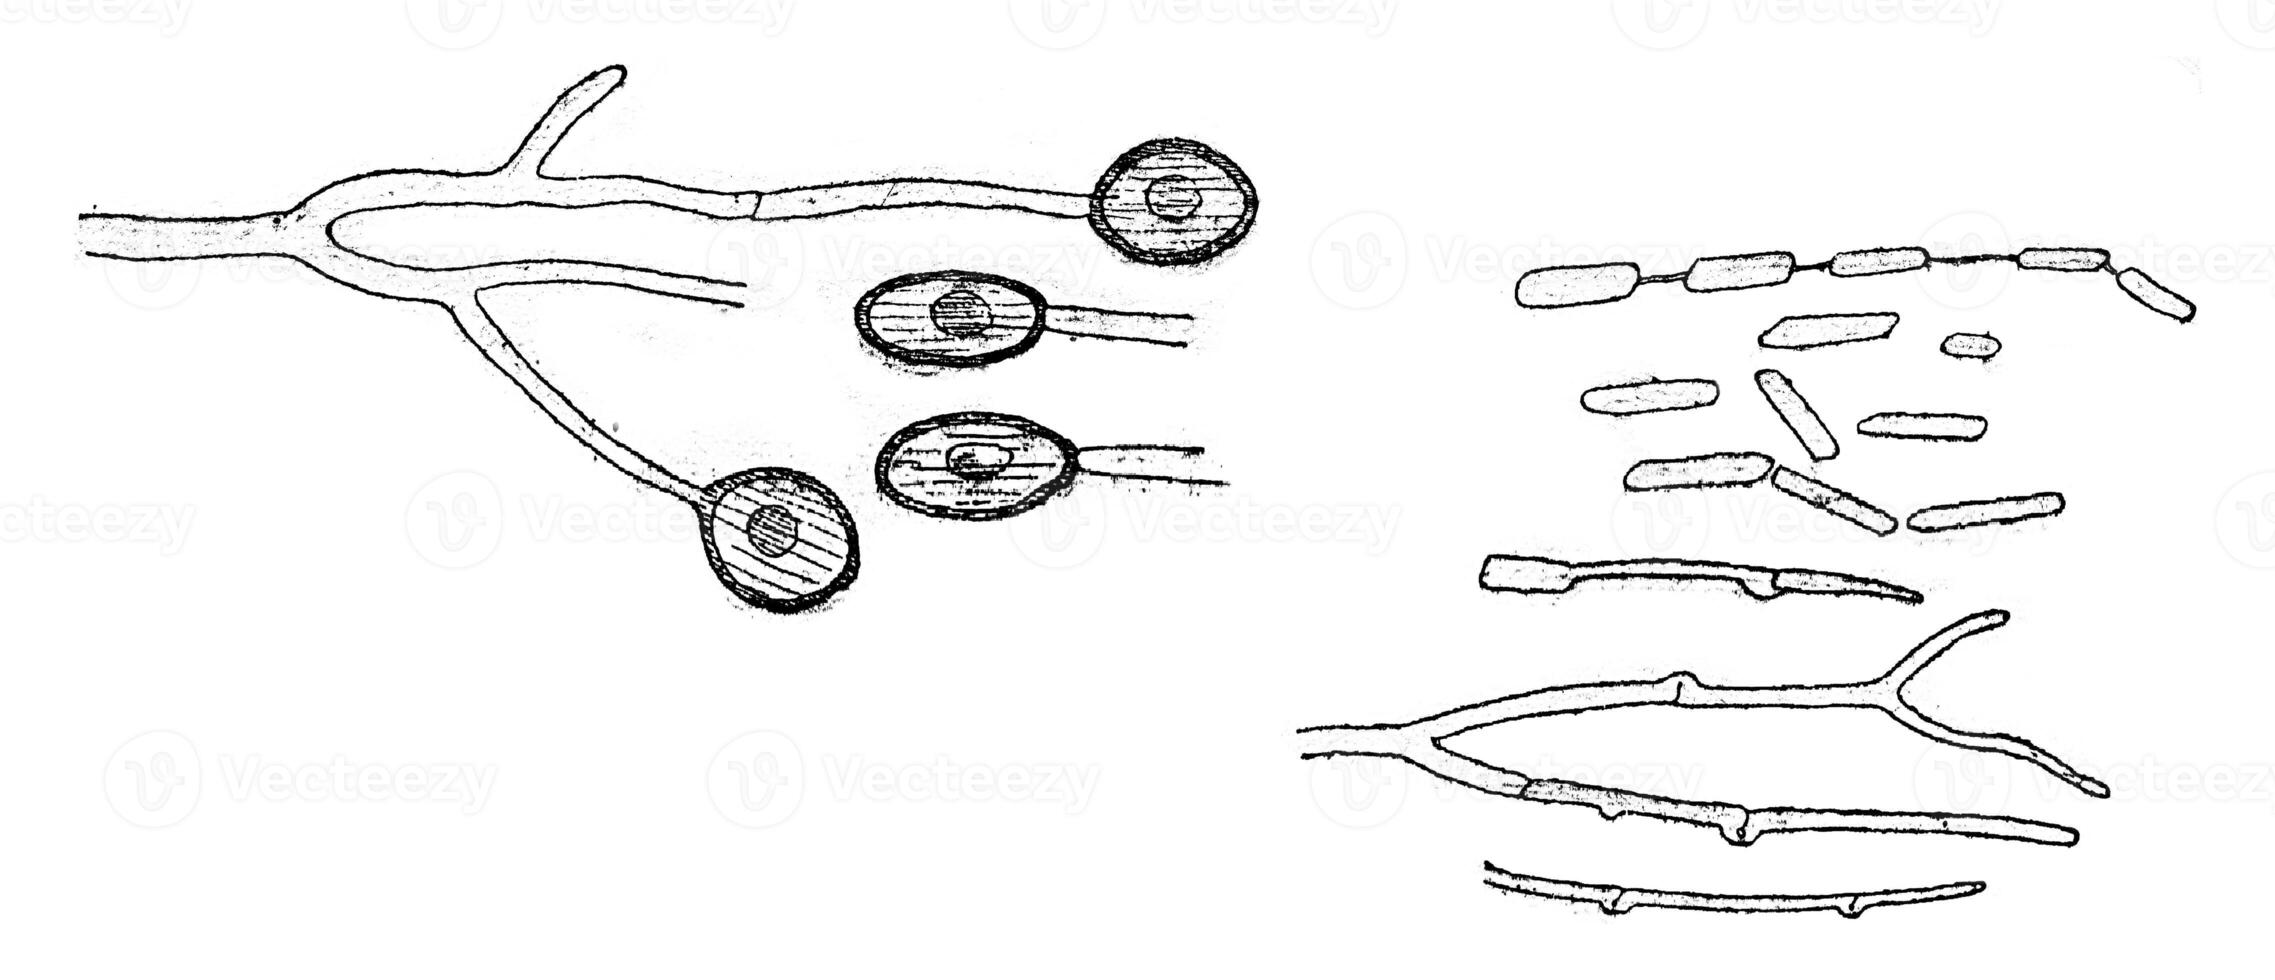 conidies former, chlamydospores et germination, ancien gravure. photo